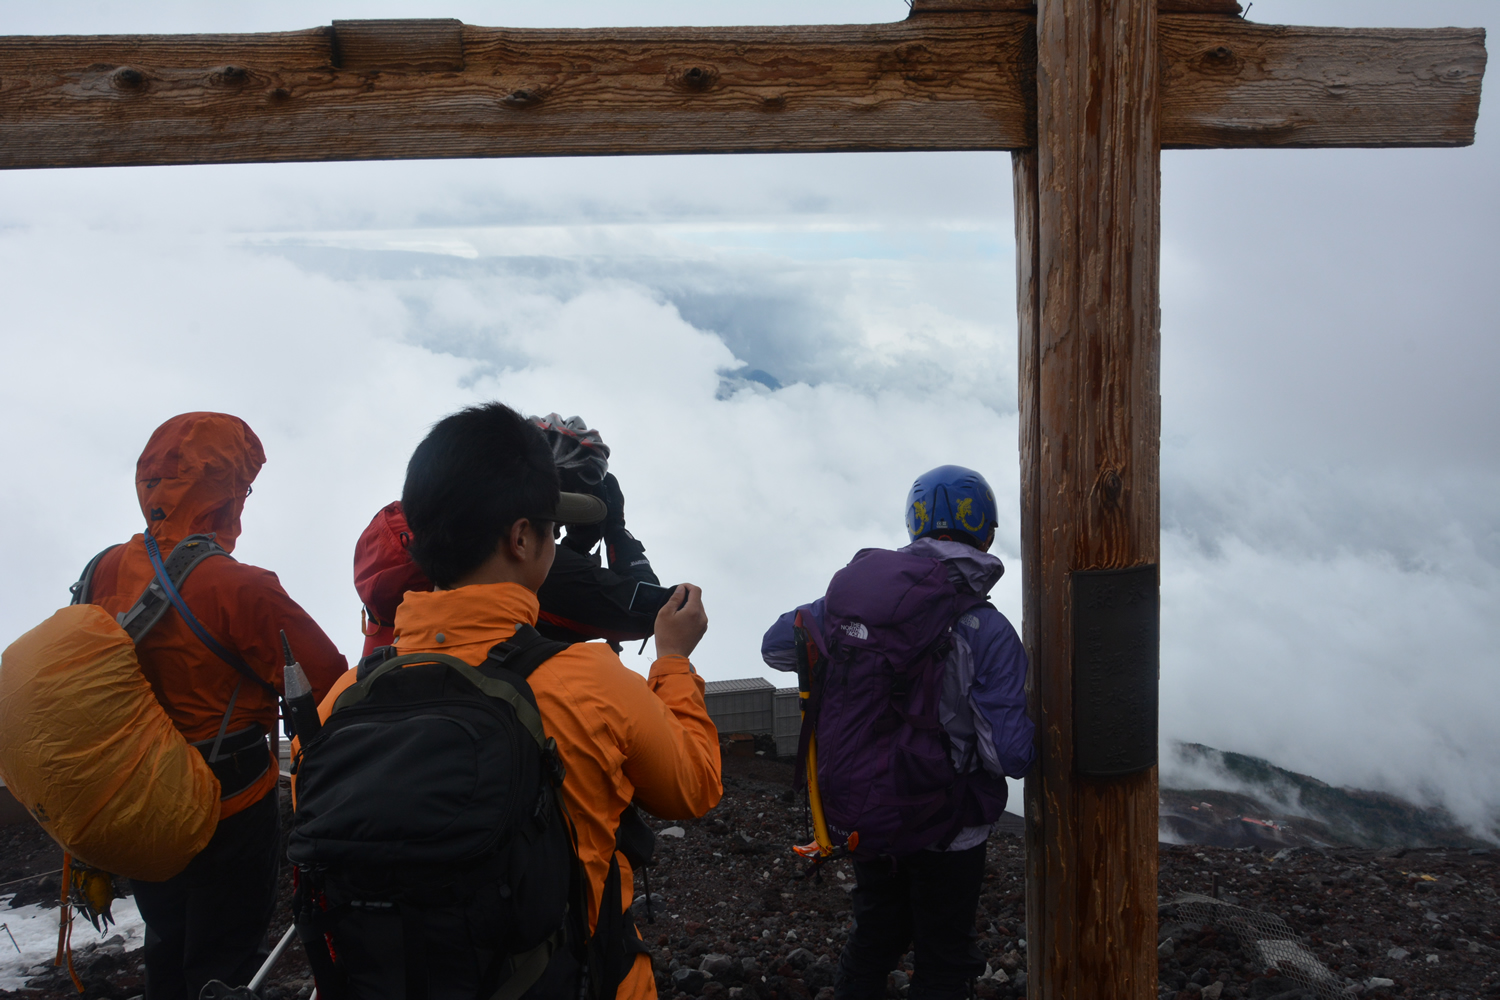 富士山 富士宮口 残雪期 登山